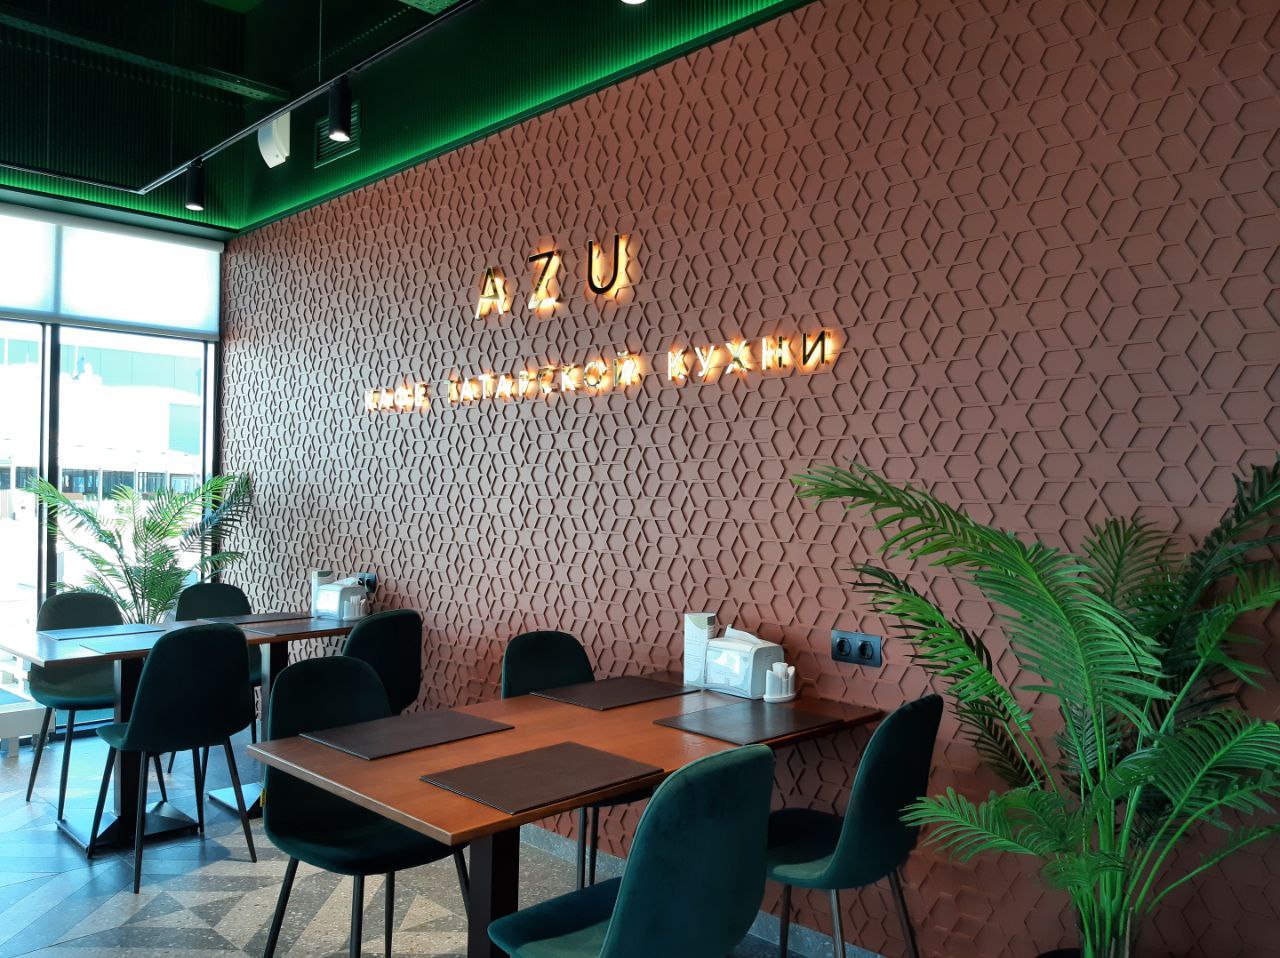 Кафе татарской кухни «Азу» теперь в KazanMall!